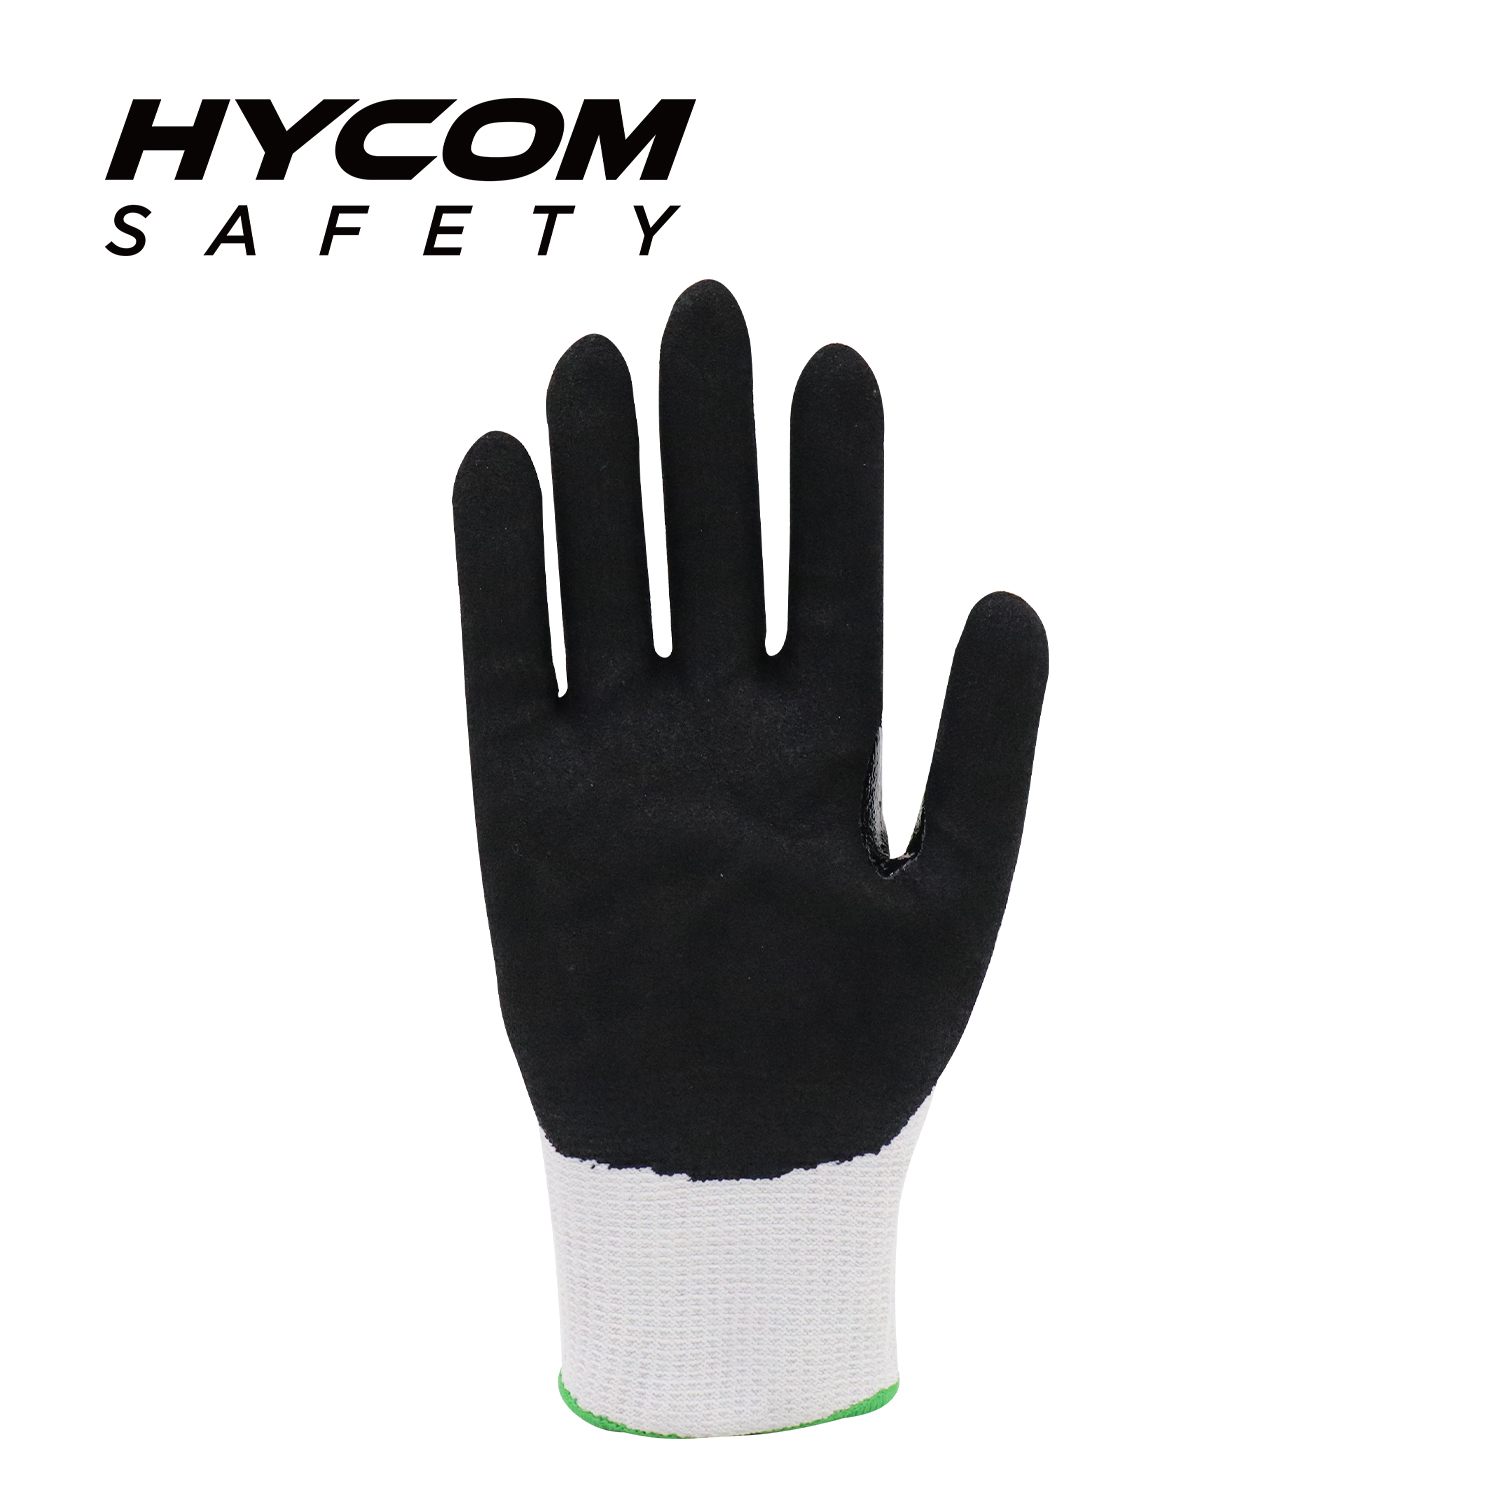 HYCOM 13G ANSI 9 Schnittfester Handschuh mit Nitrilbeschichtung der Handfläche PSA-Handschuhe